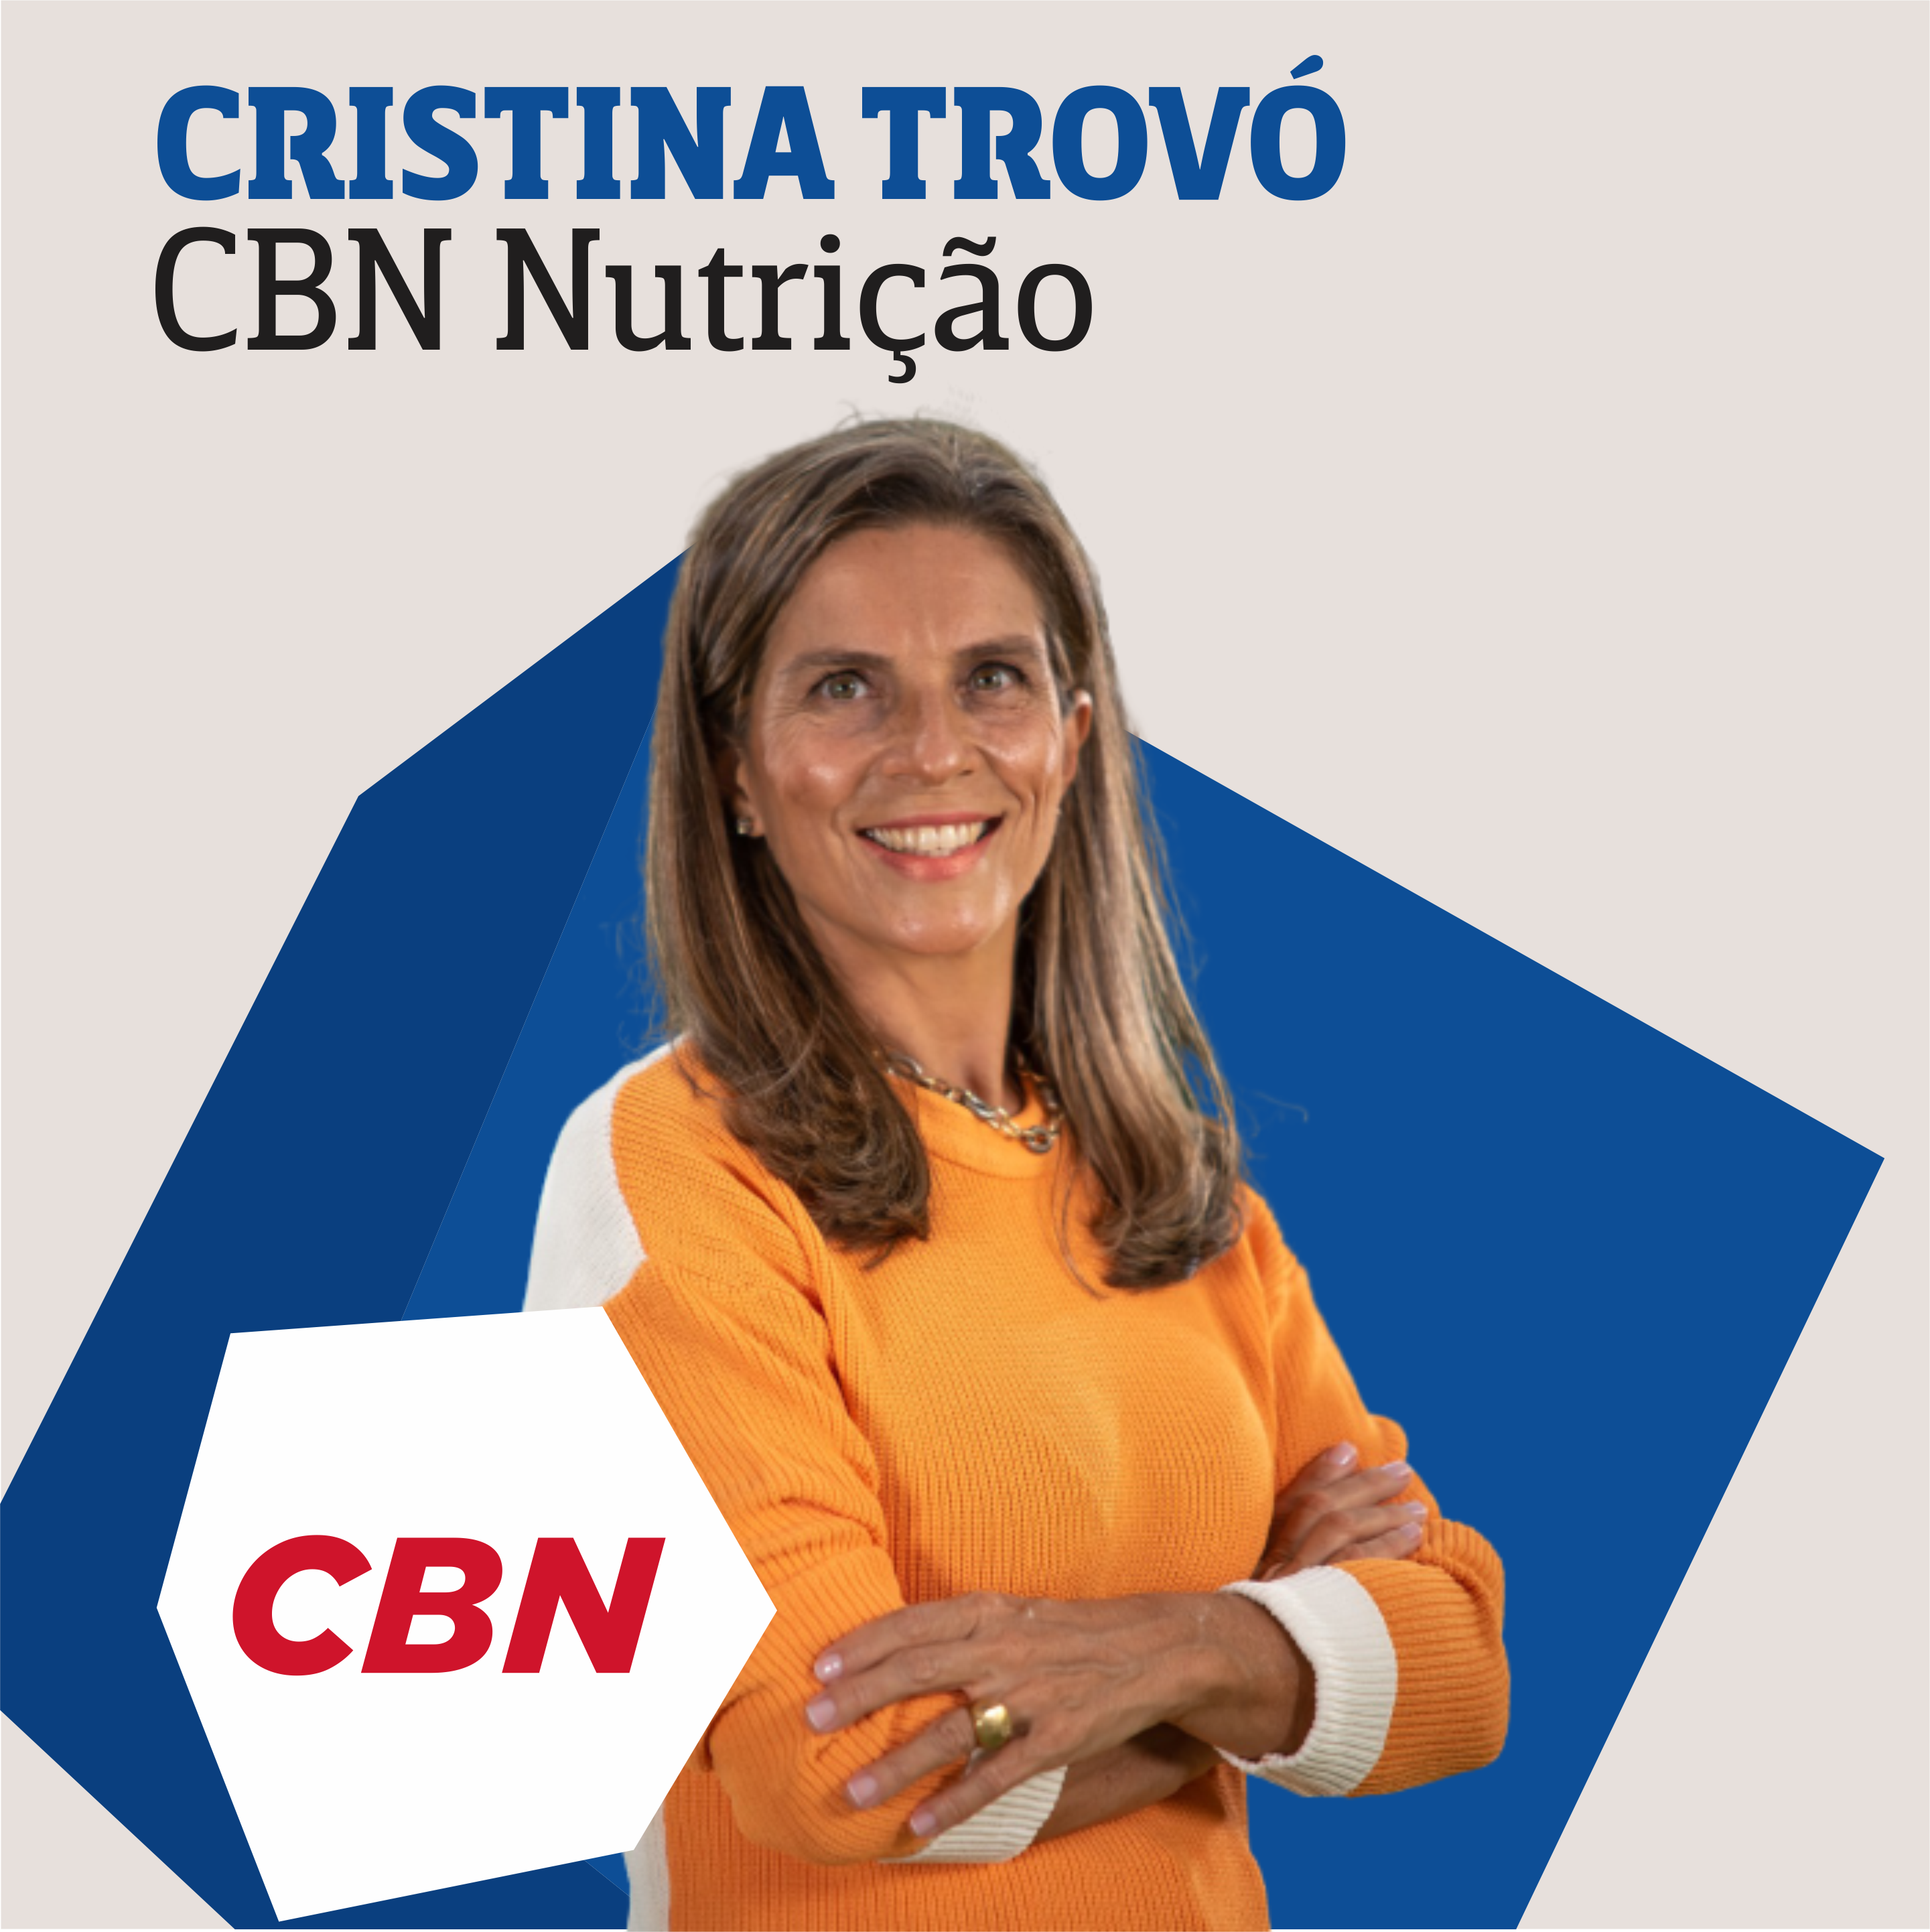 CBN Nutrição